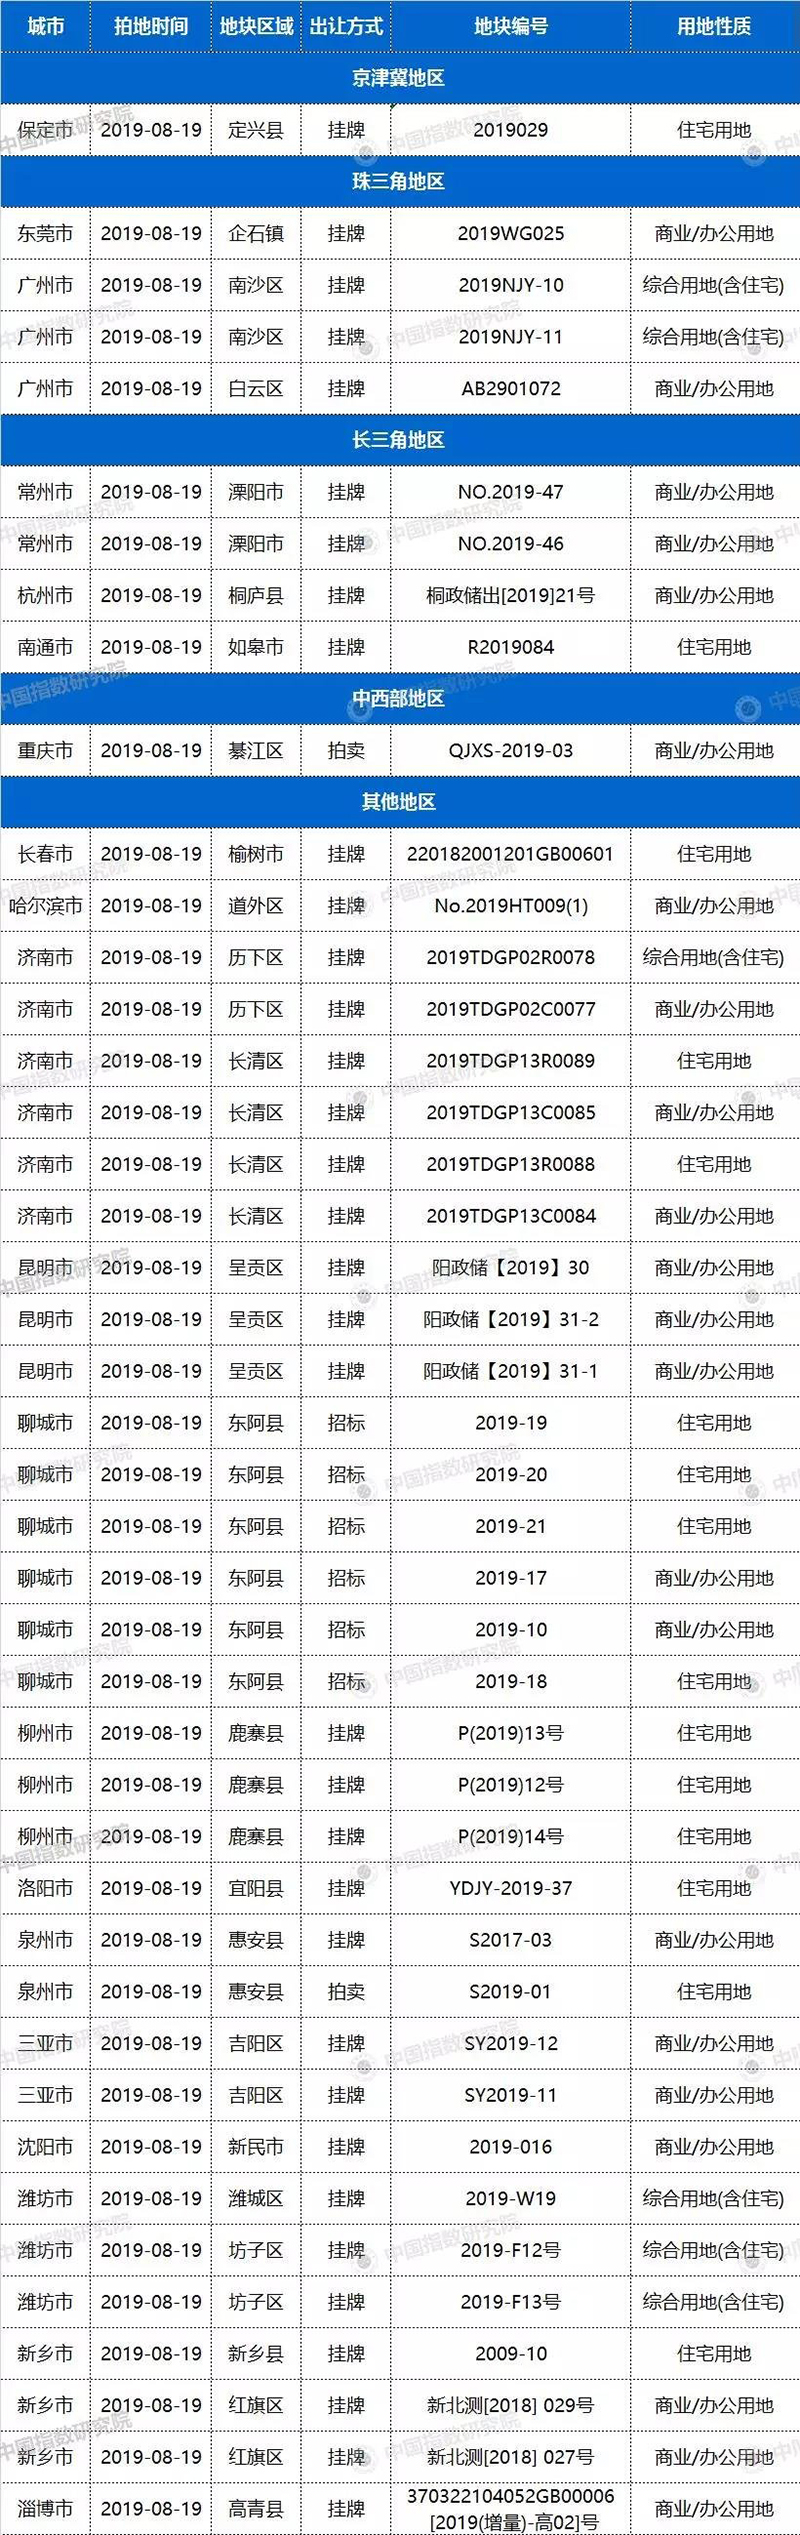 今日20城43宗地块出让，广州南沙2宅地起拍价57亿